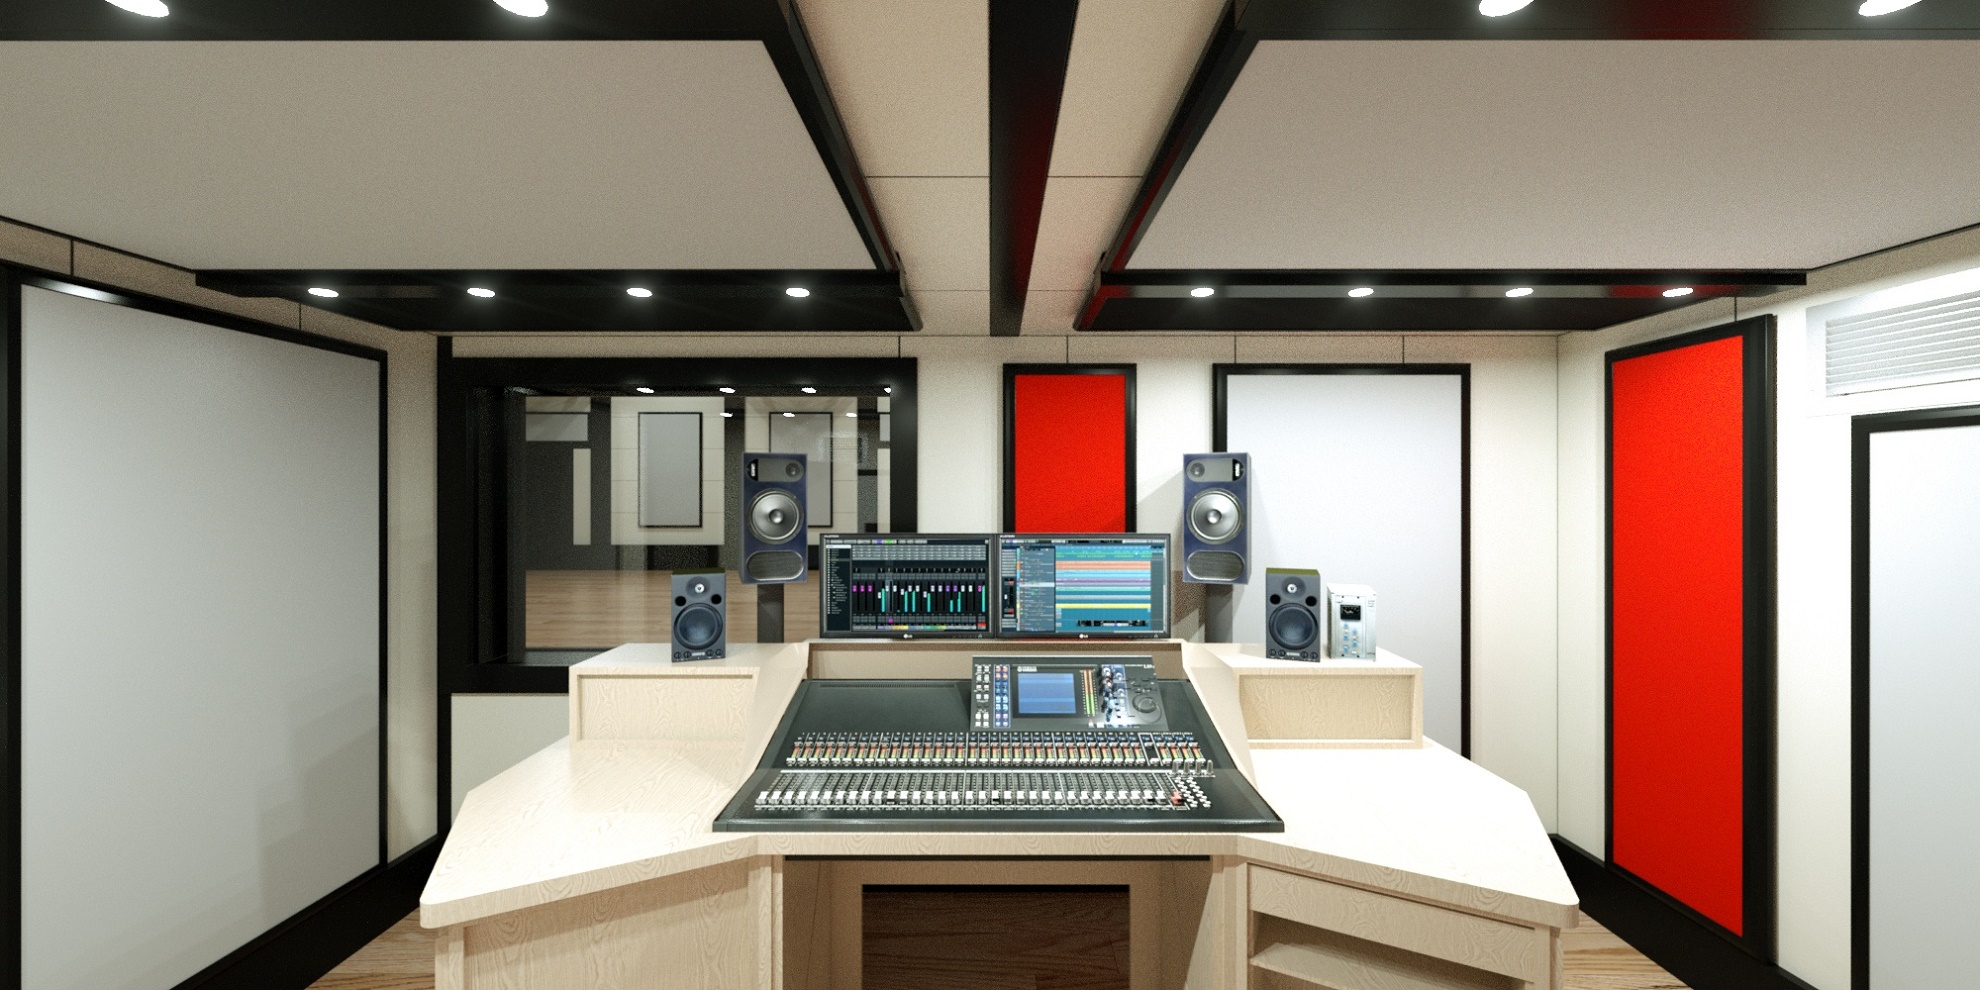 A recording studio mixer.